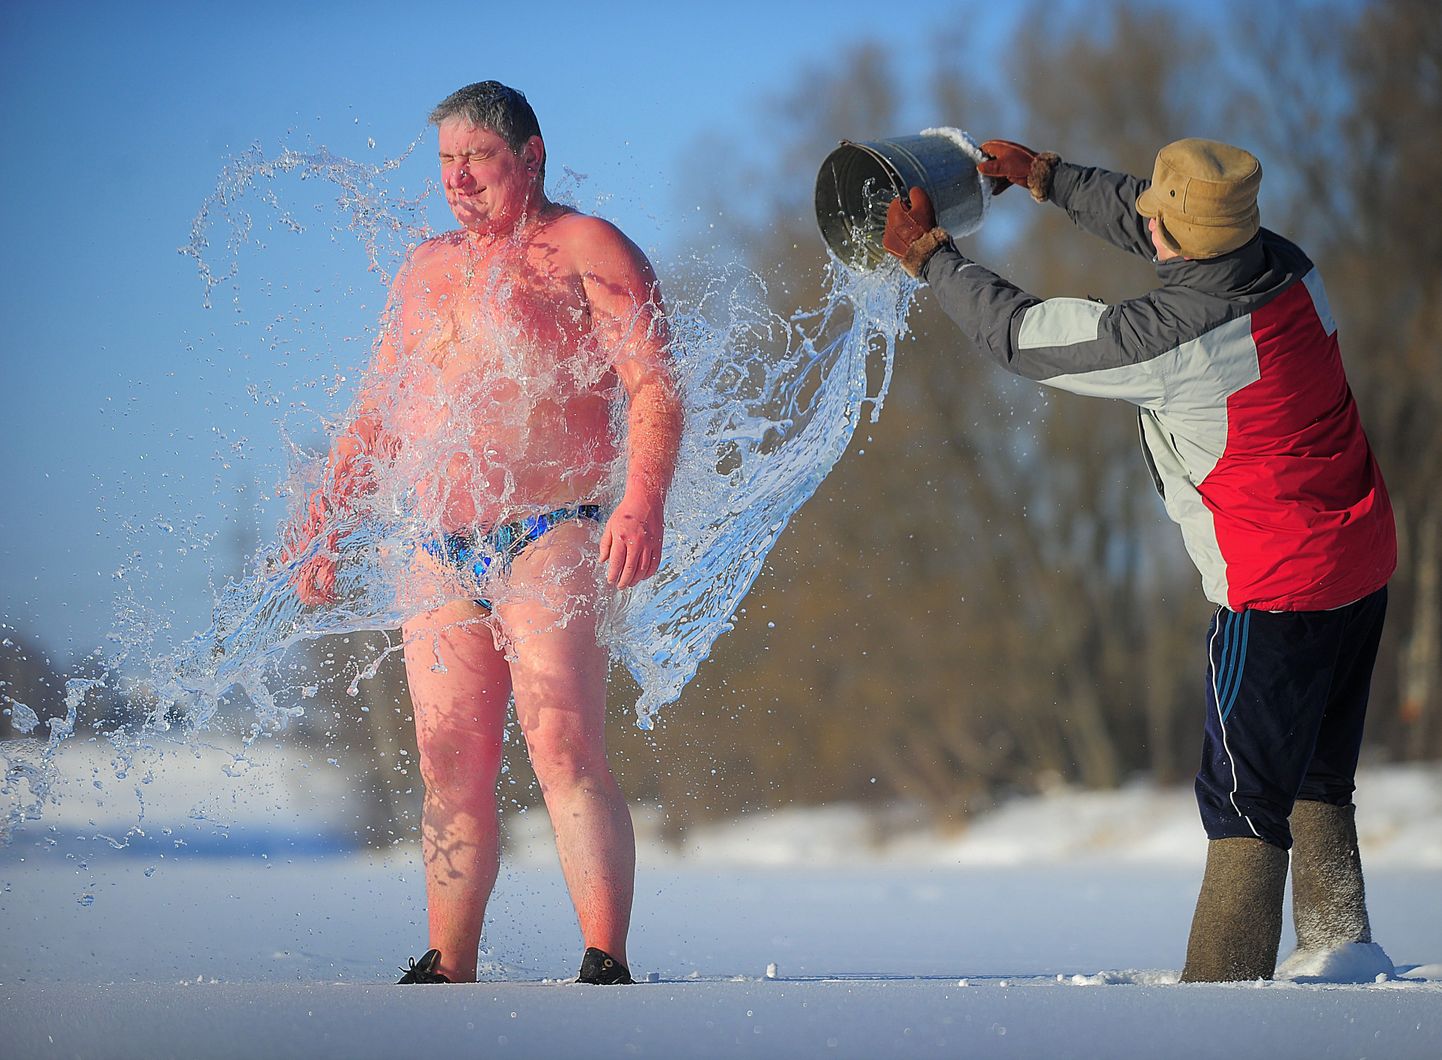 Külma veega kastetav mees täna Ivanovos Venemaal.